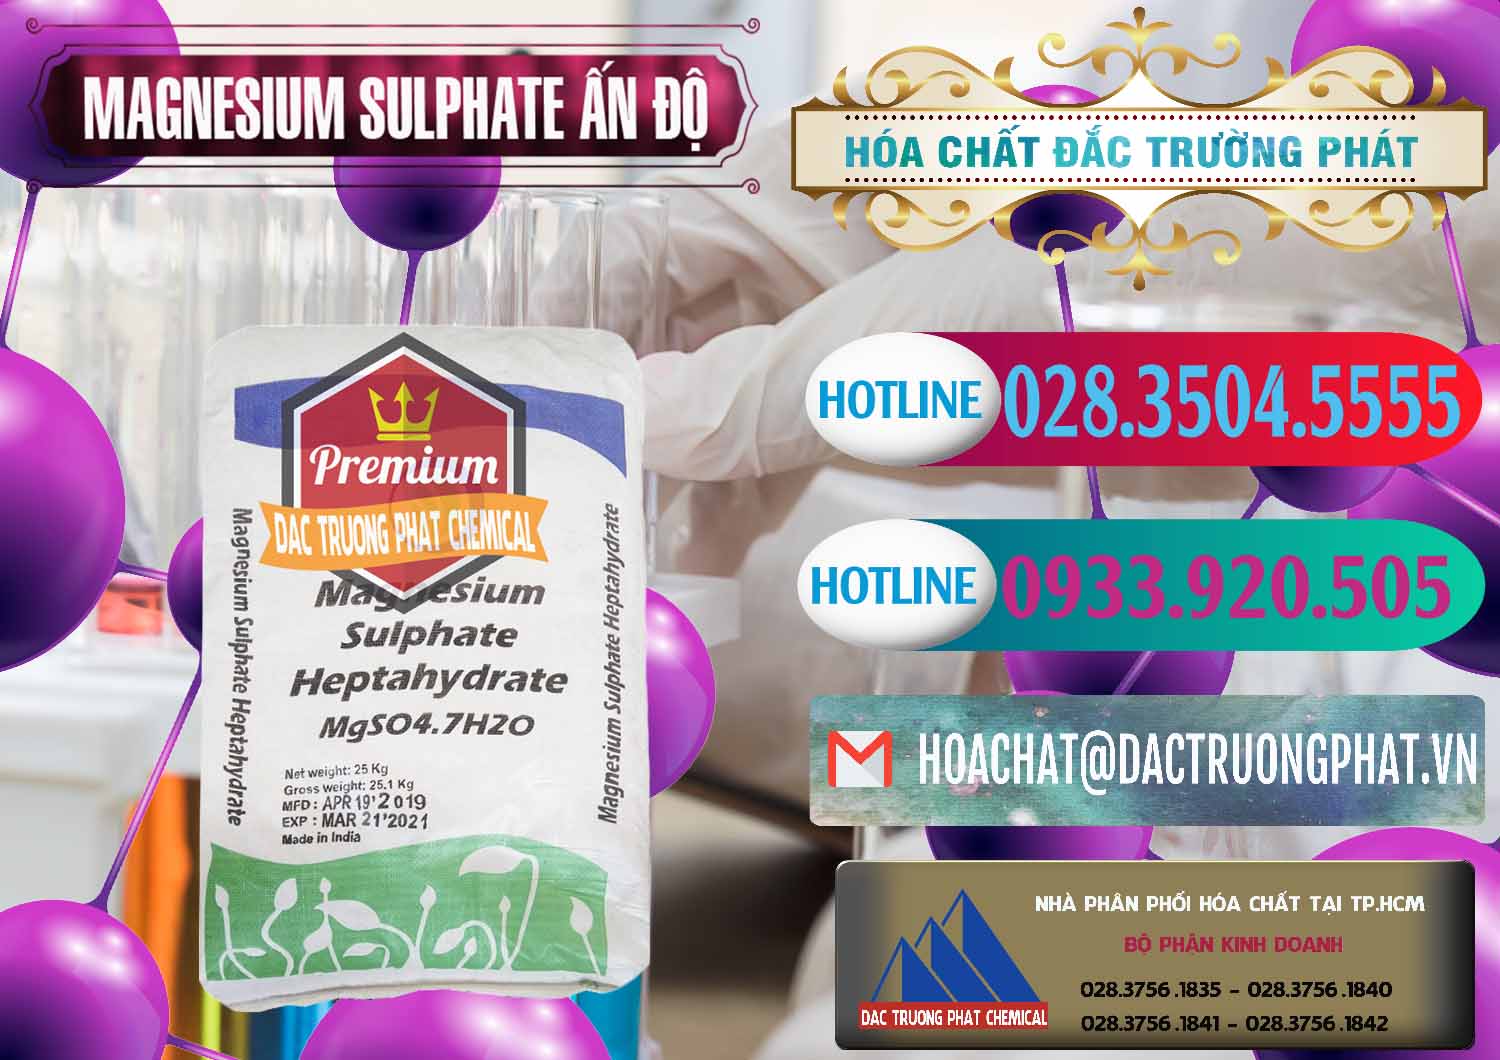 Nhà cung ứng _ bán MGSO4.7H2O – Magnesium Sulphate Heptahydrate Ấn Độ India - 0362 - Phân phối hóa chất tại TP.HCM - truongphat.vn